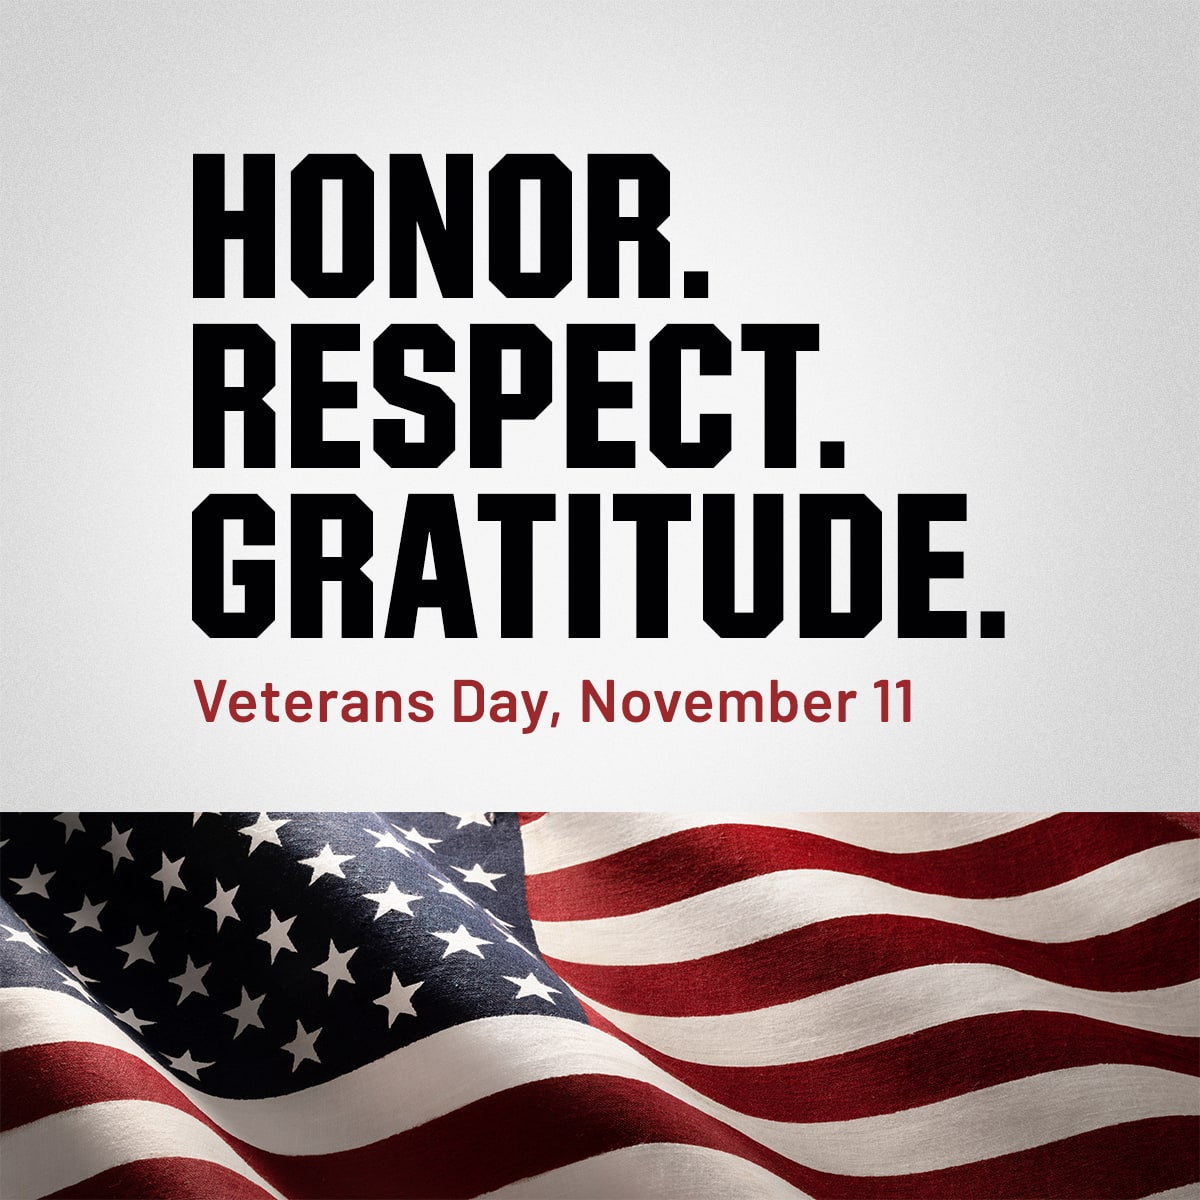 Honor. Respect. Gratitude. Veterans day, november 11.